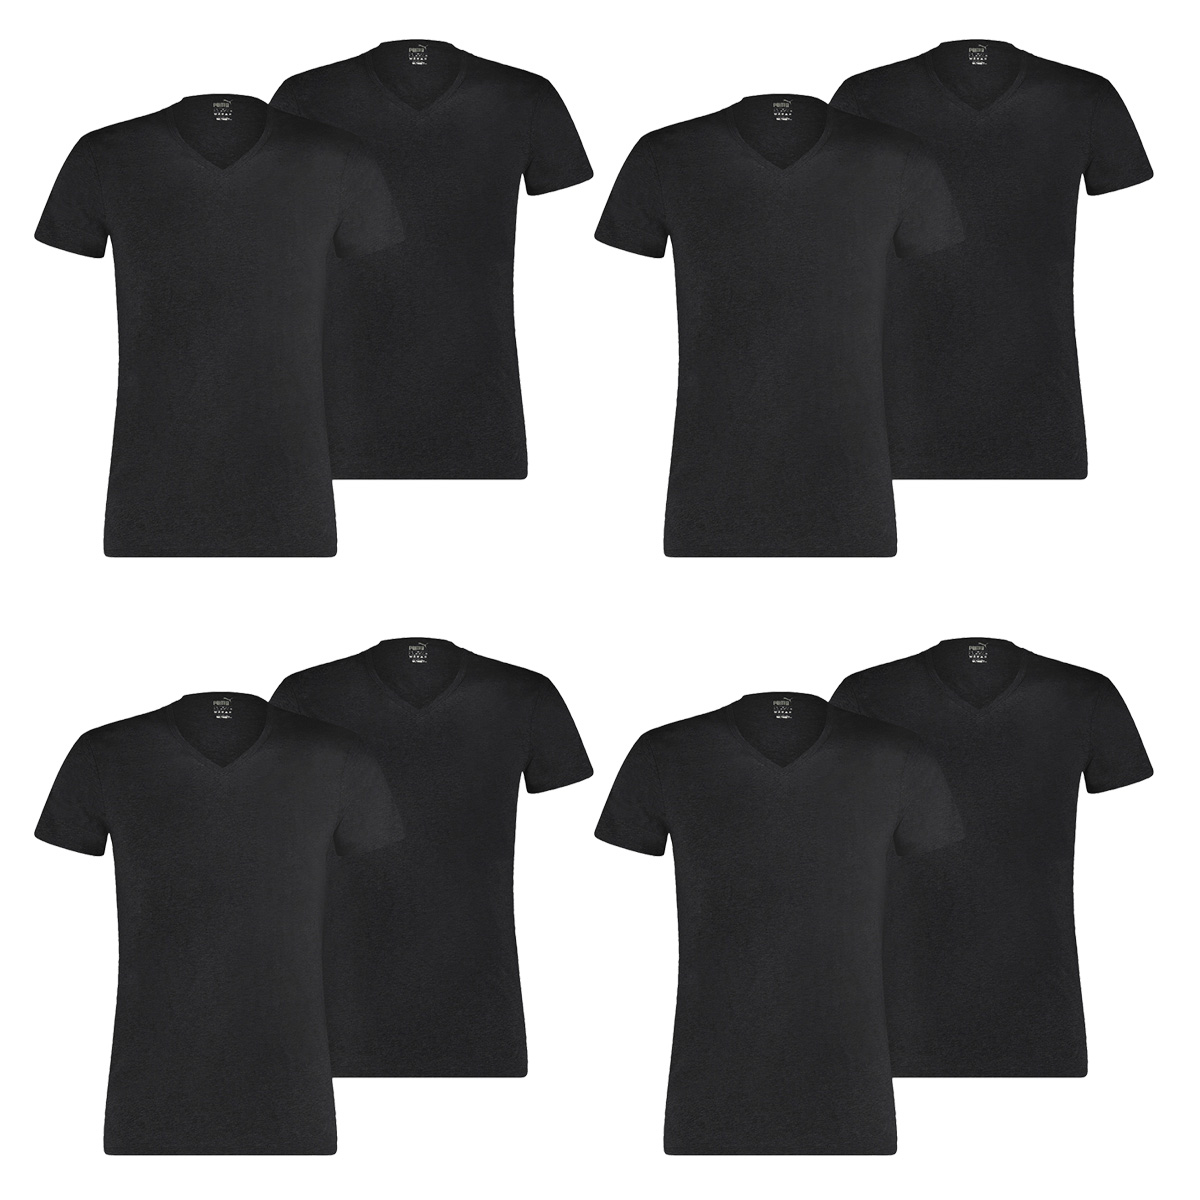 8 er Pack Puma Basic V Neck T-Shirt Men Herren Unterhemd V-Ausschnitt